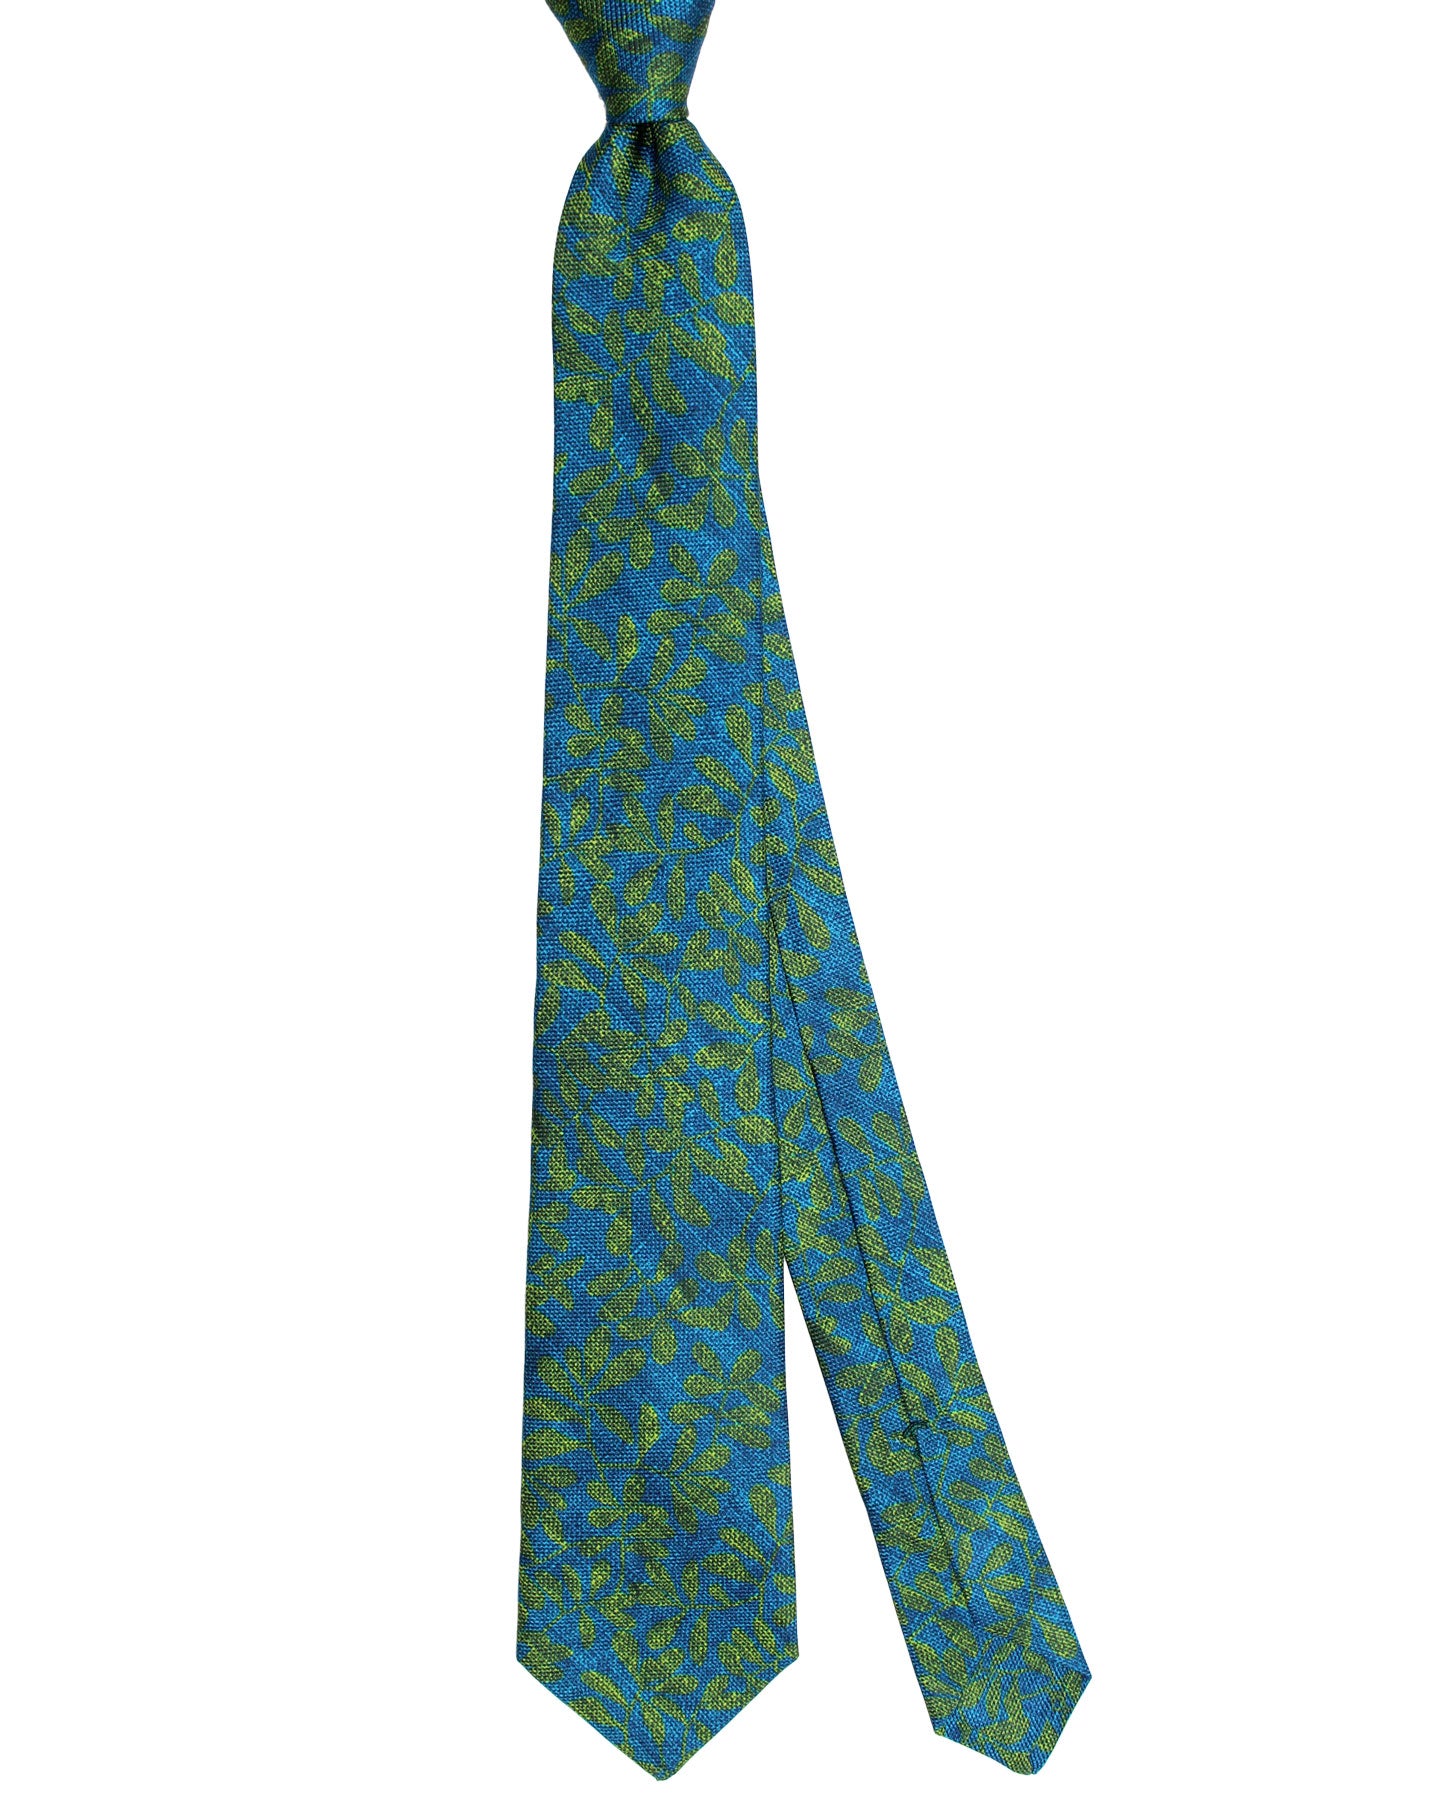 Kiton Silk Tie Aqua Blue Green Floral Design - Sevenfold Necktie